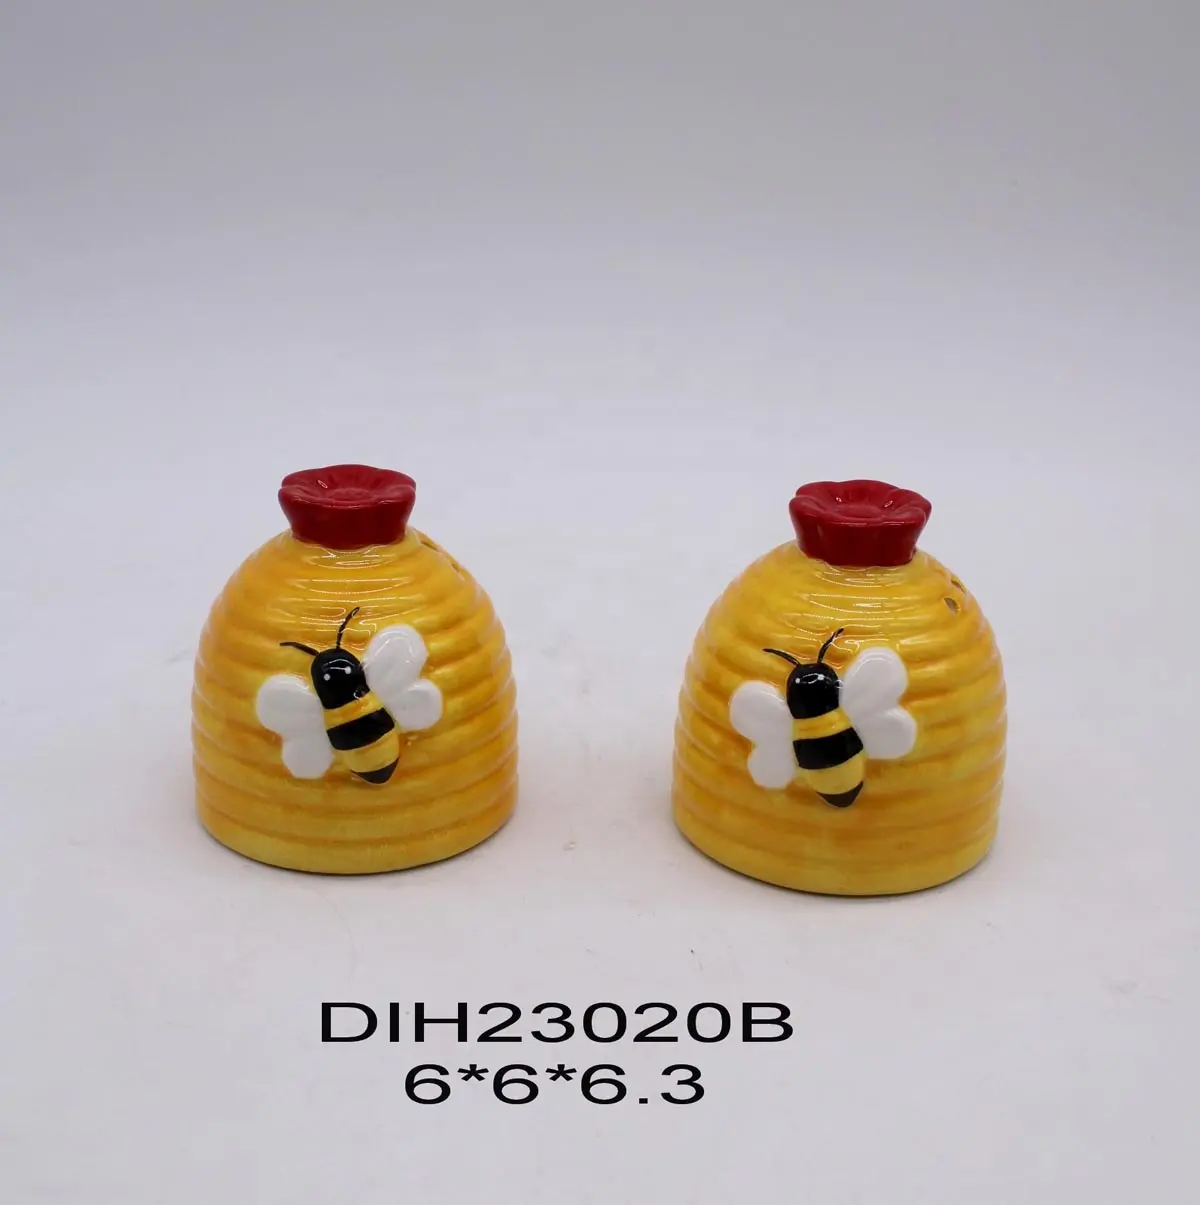 Salero y pimentero de cerámica pintado a mano con decoración de abeja